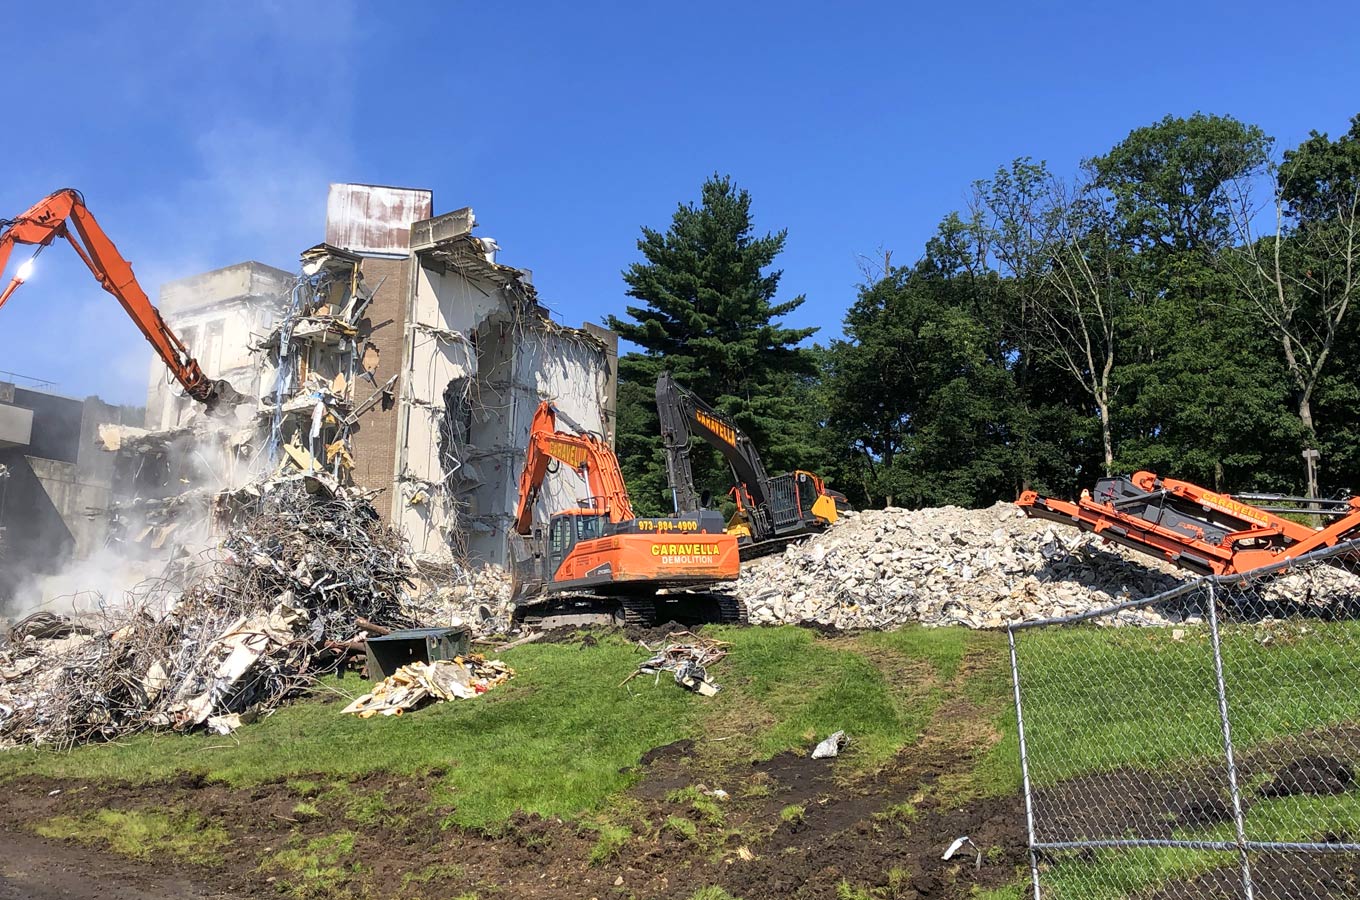 Demolition Services in Camden, NJ | Caravella Demolition